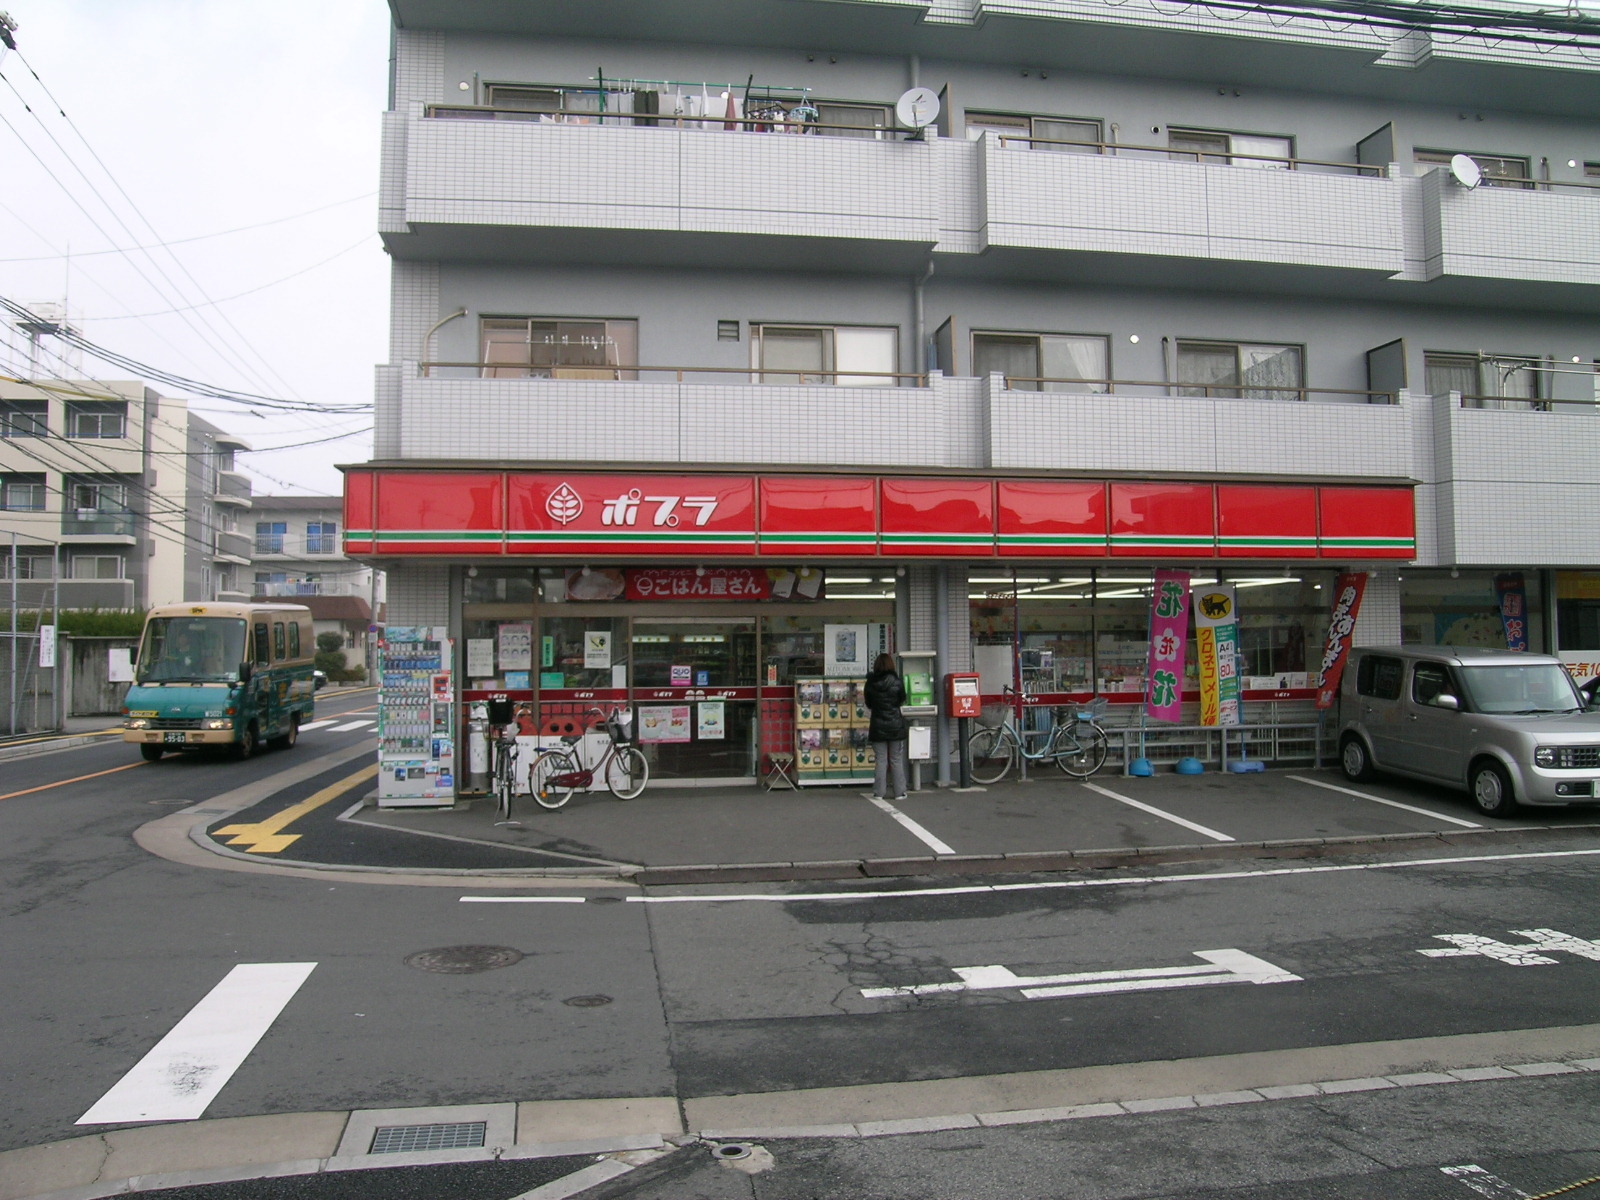 Convenience store. Poplar Itsukaichi central store up (convenience store) 281m